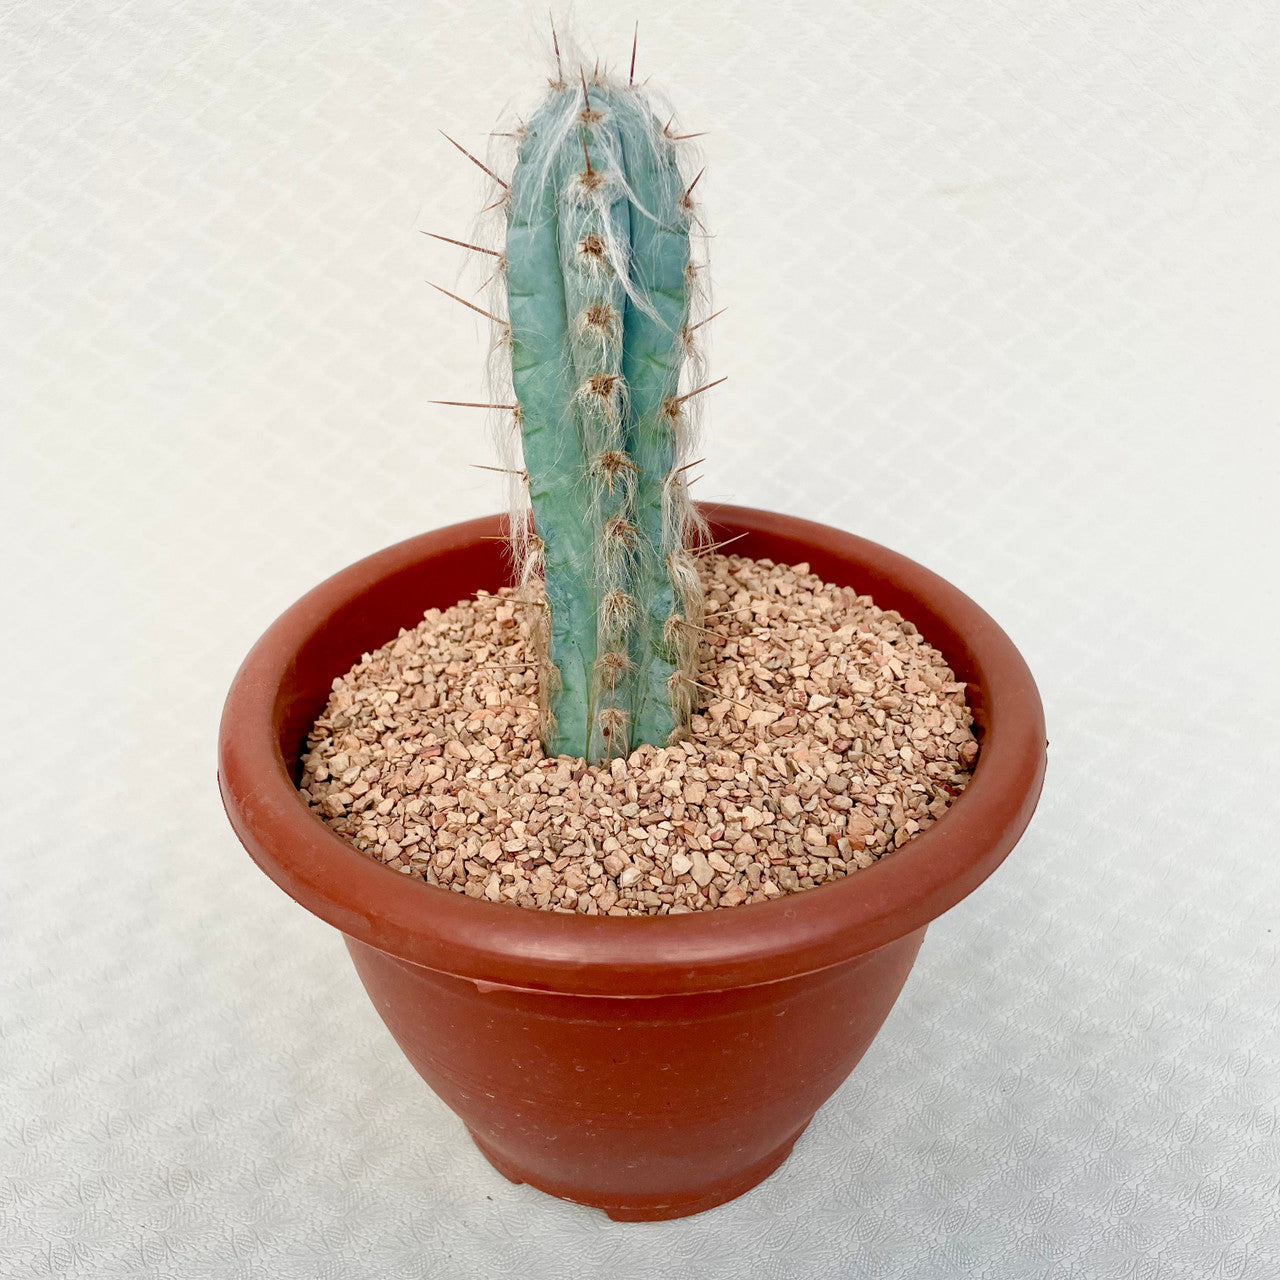 Pilosocereus Pachycladus (Blue Torch Cactus) in a pot